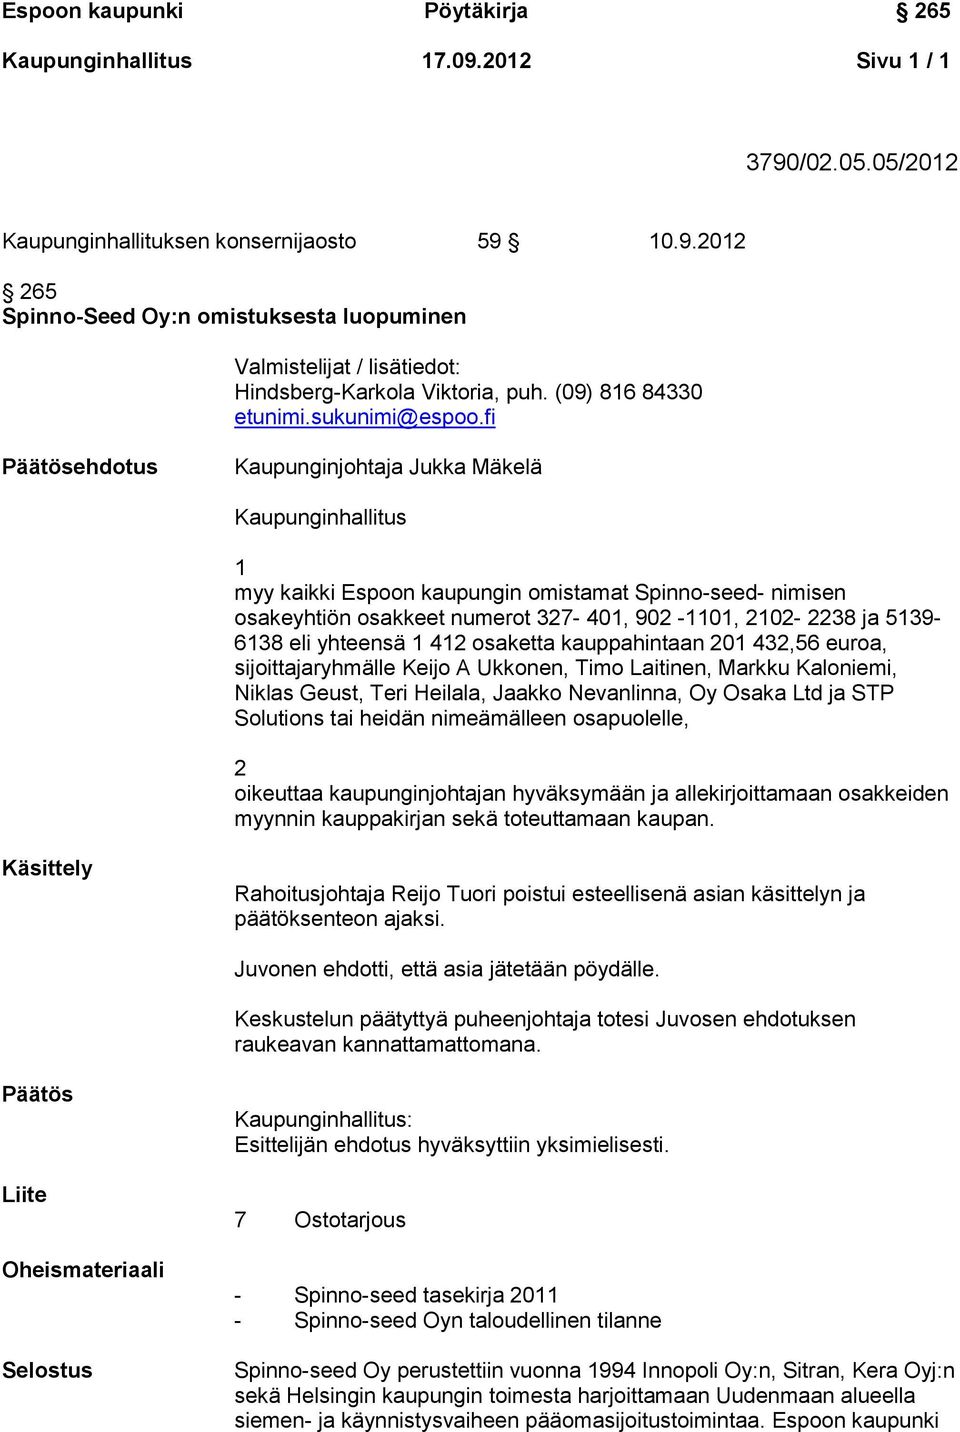 fi Päätösehdotus Kaupunginjohtaja Jukka Mäkelä Kaupunginhallitus 1 myy kaikki Espoon kaupungin omistamat Spinno-seed- nimisen osakeyhtiön osakkeet numerot 327-401, 902-1101, 2102-2238 ja 5139-6138